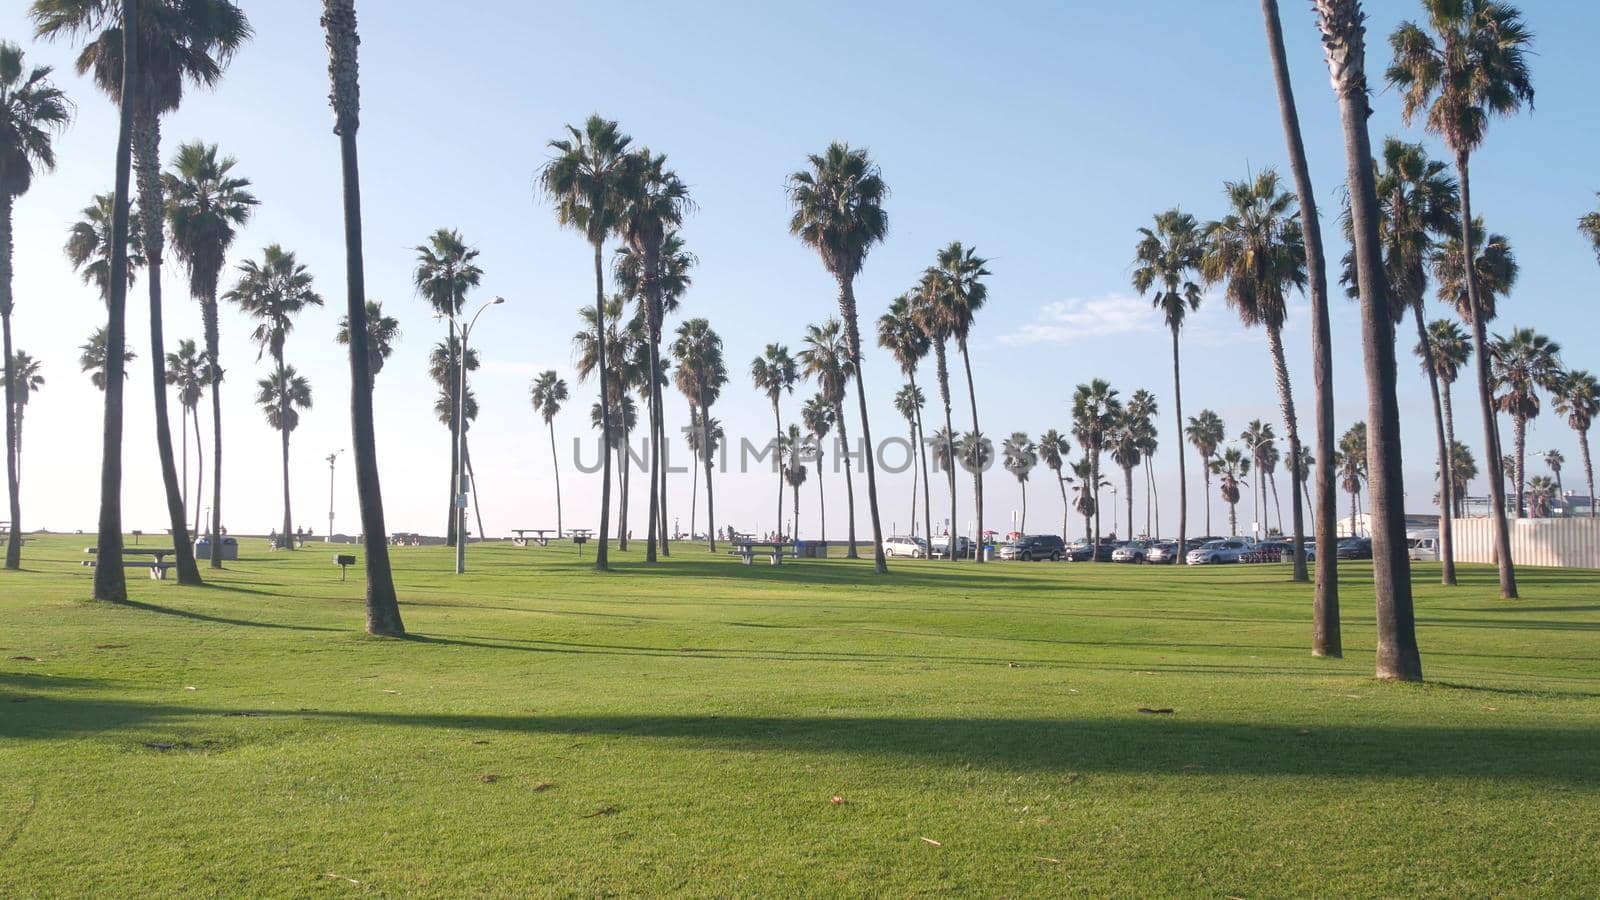 Palm trees and sky, beachfront park, pacific ocean beach, California coast, USA. by DogoraSun